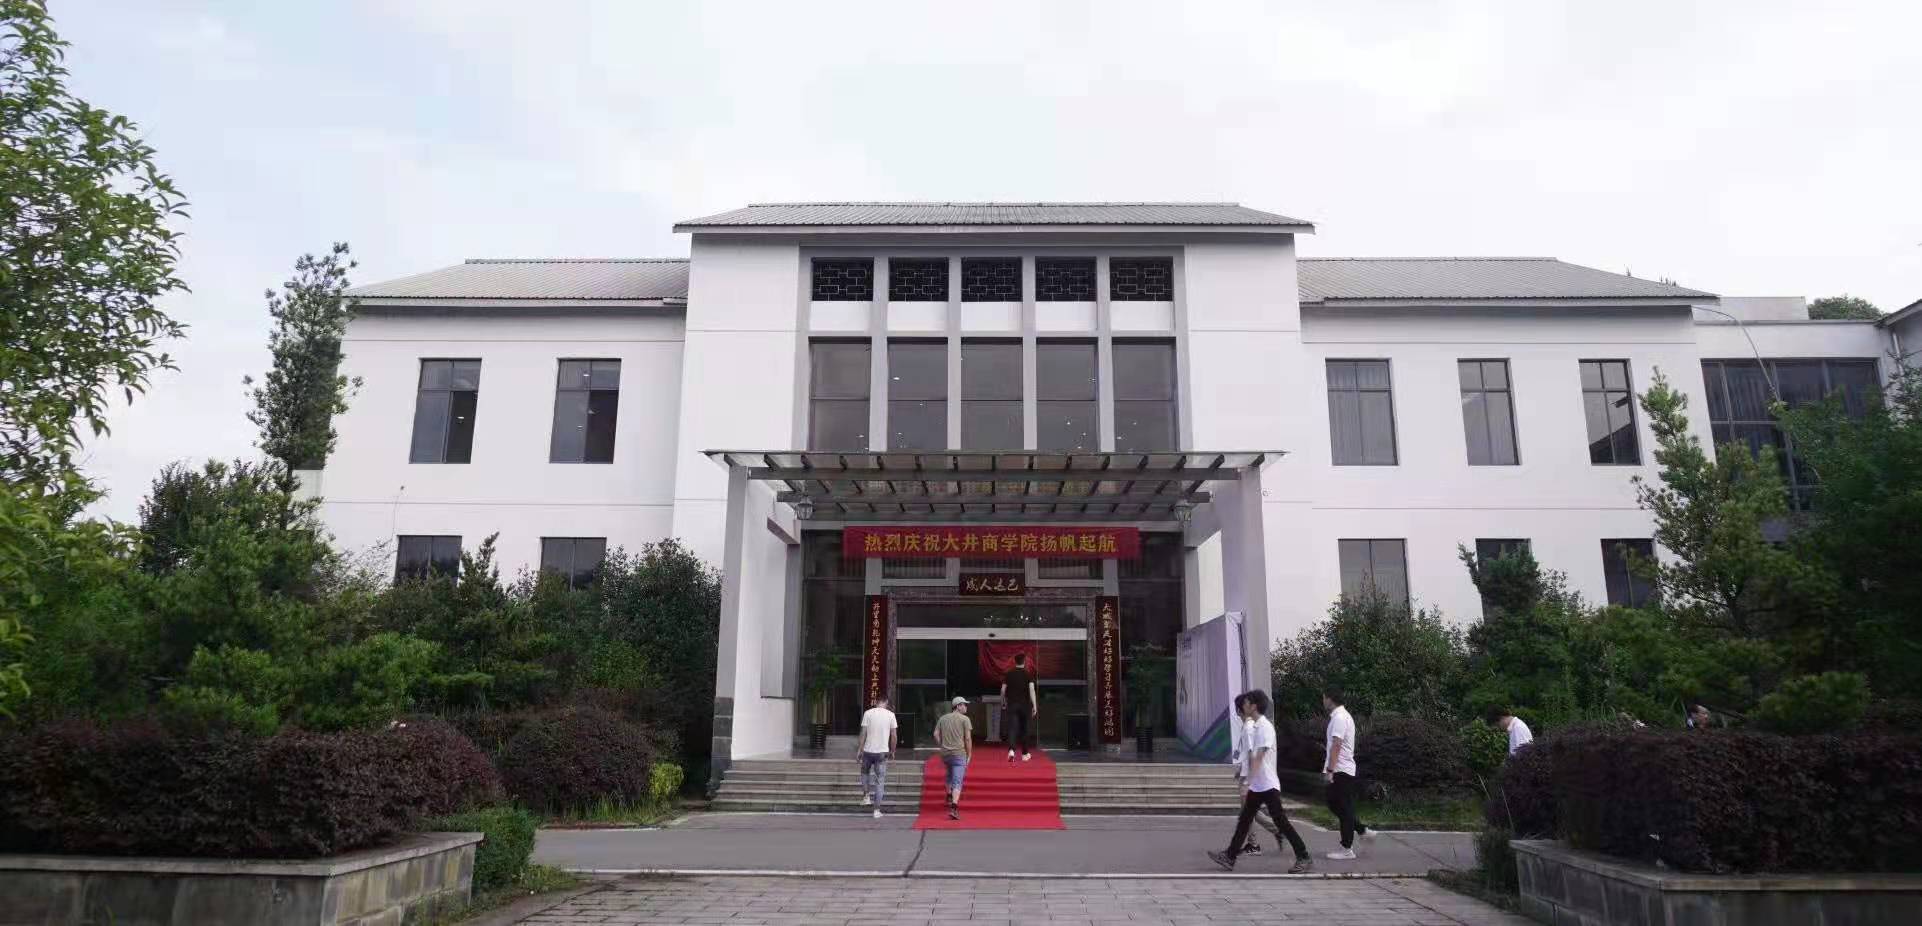 Dajing Business School 